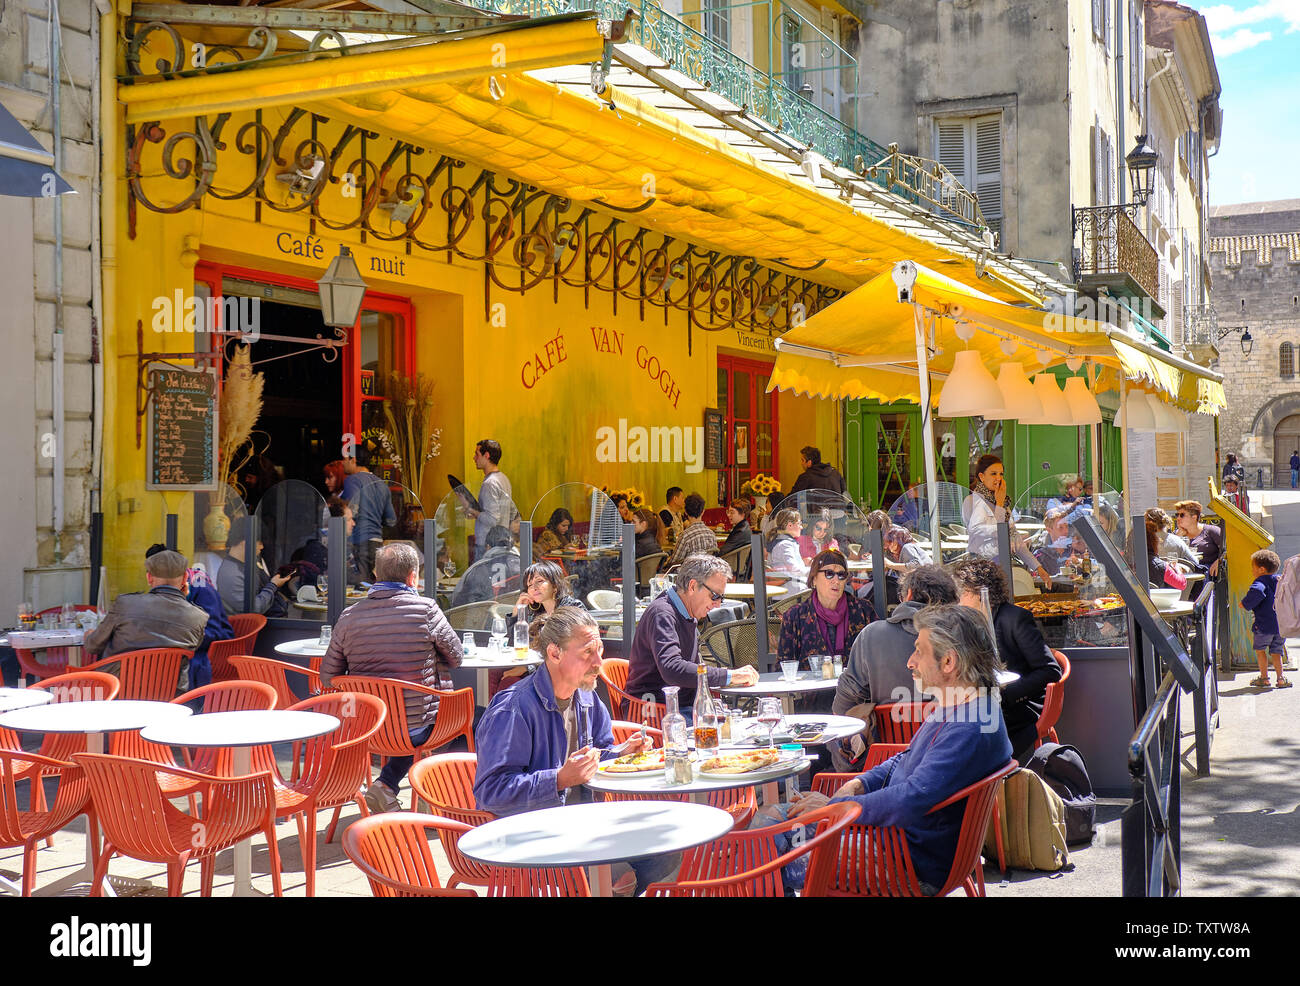 Arles, France : Les visiteurs de la ville boire et manger au Café la nuit, rendue célèbre par Vincent Van Gogh peinture 'terrasse de café de nuit' Banque D'Images